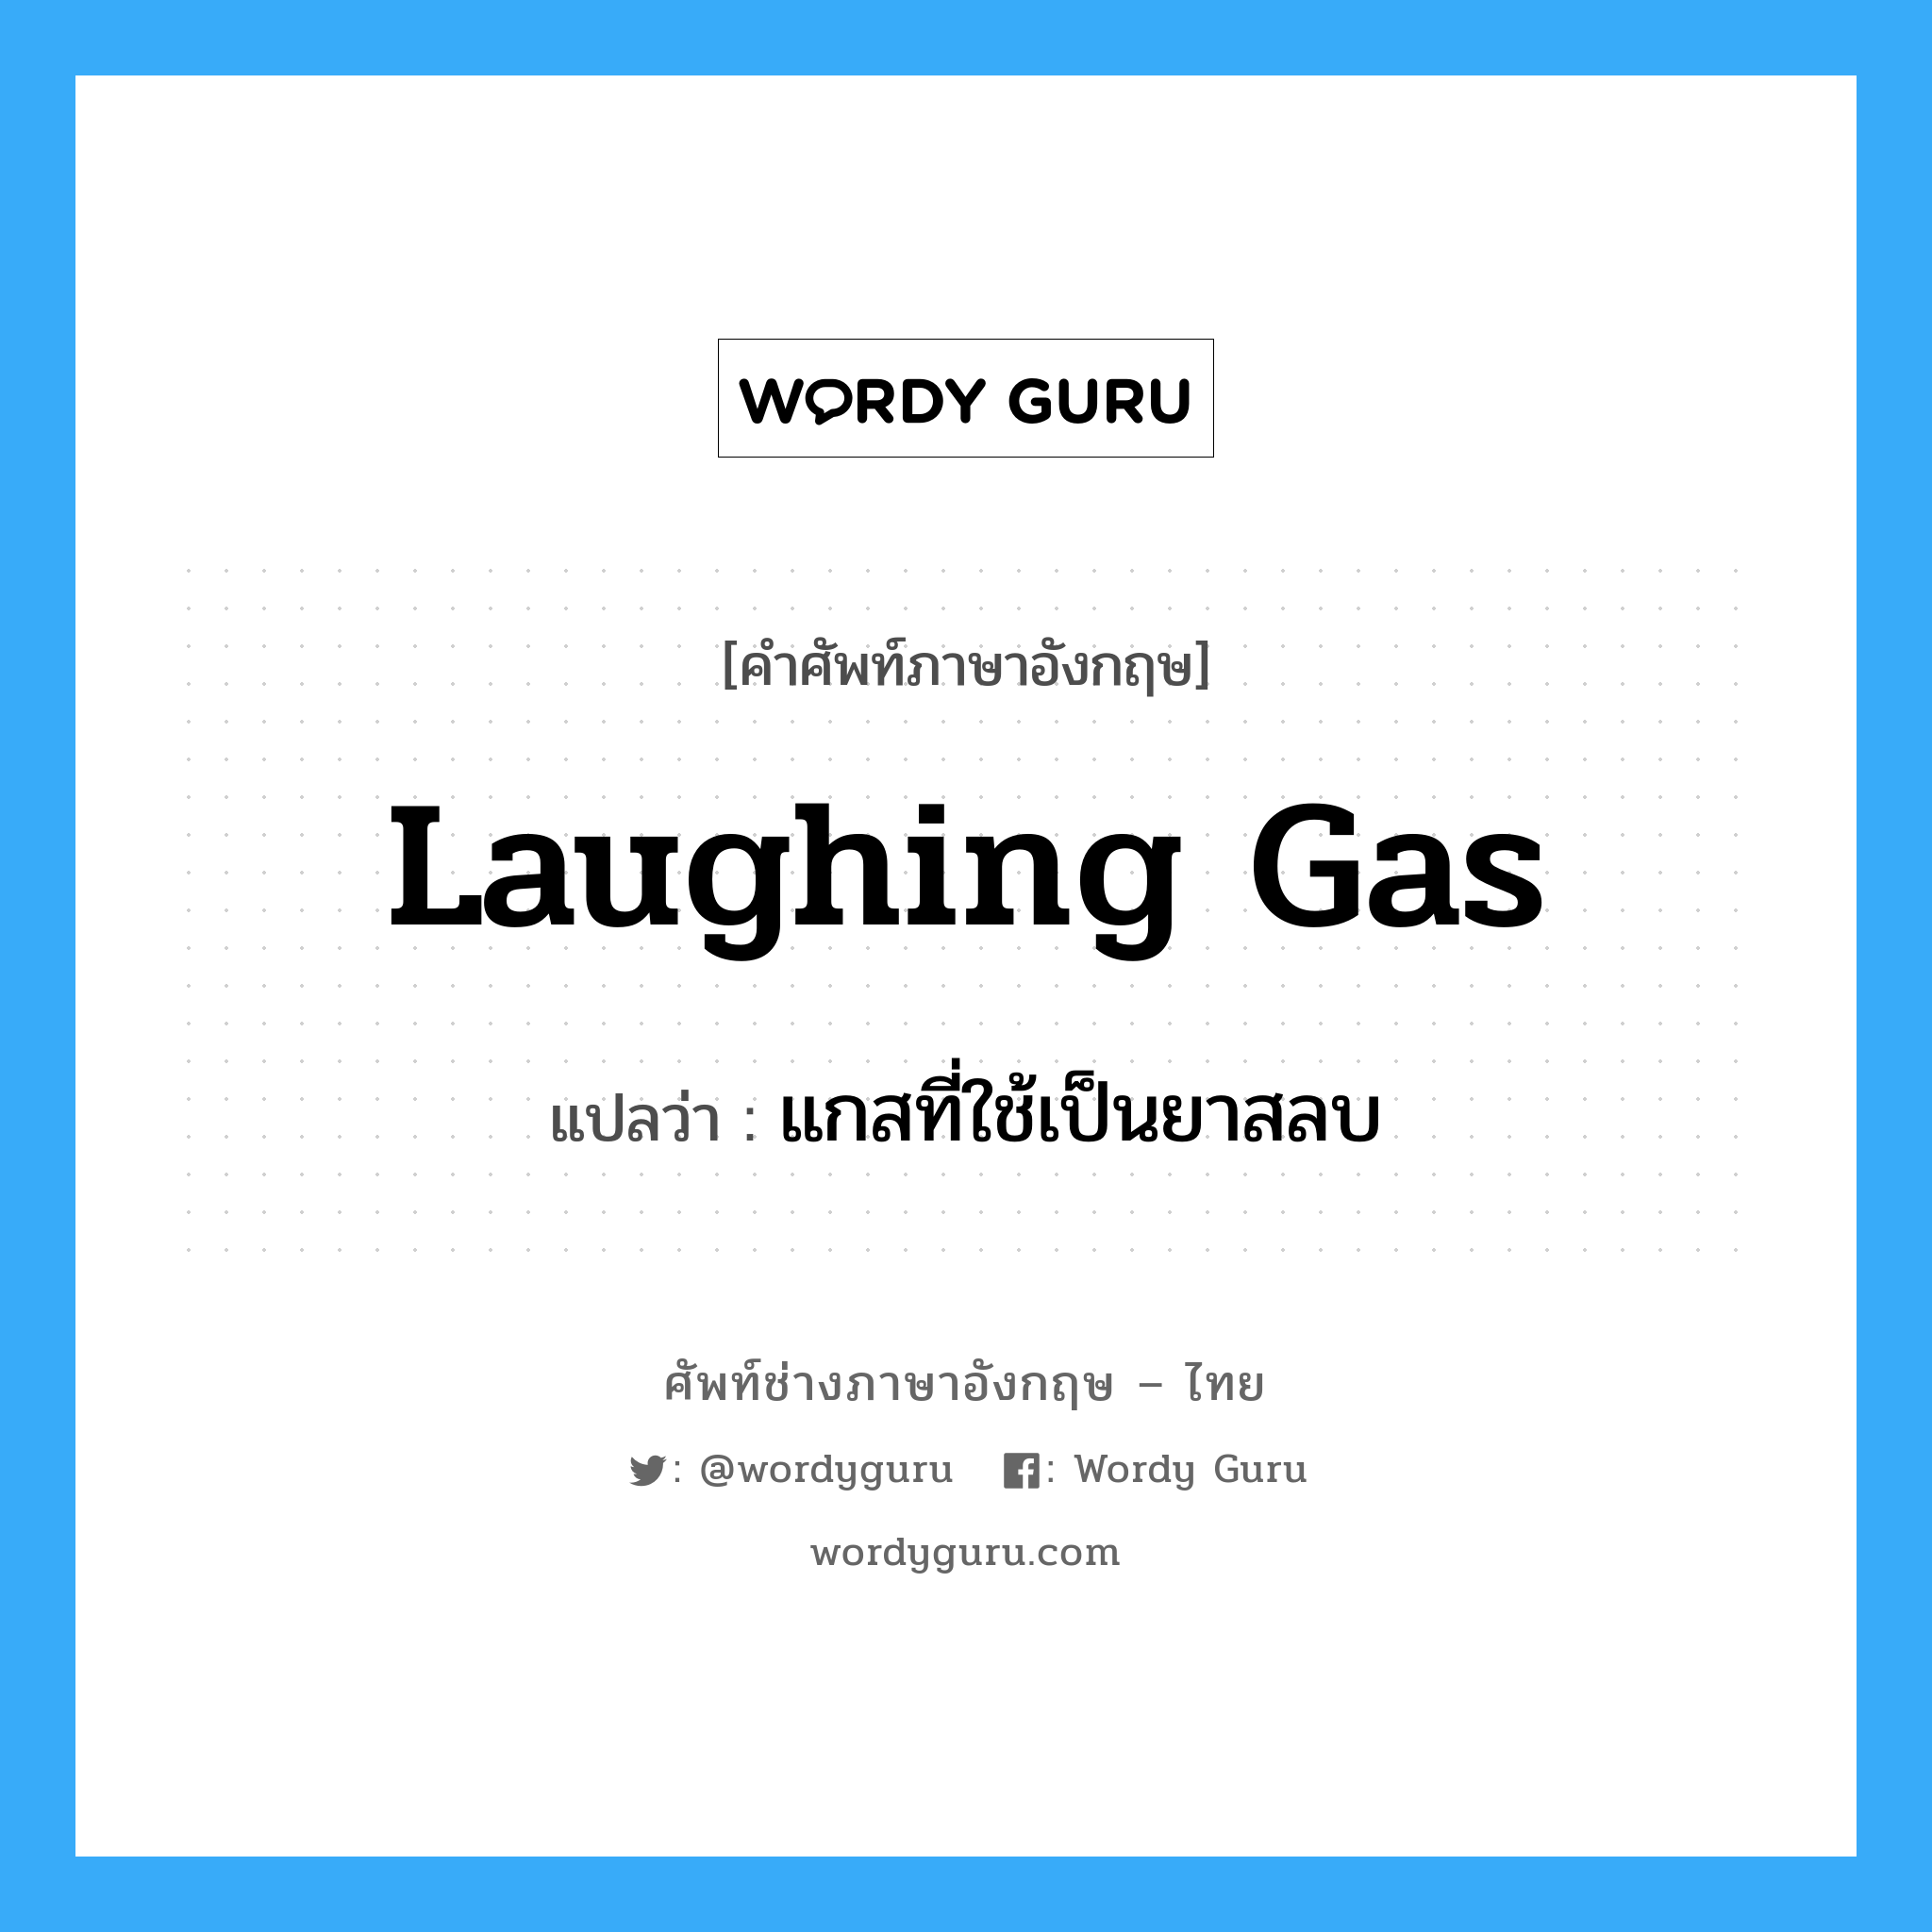 laughing gas แปลว่า?, คำศัพท์ช่างภาษาอังกฤษ - ไทย laughing gas คำศัพท์ภาษาอังกฤษ laughing gas แปลว่า แกสที่ใช้เป็นยาสลบ